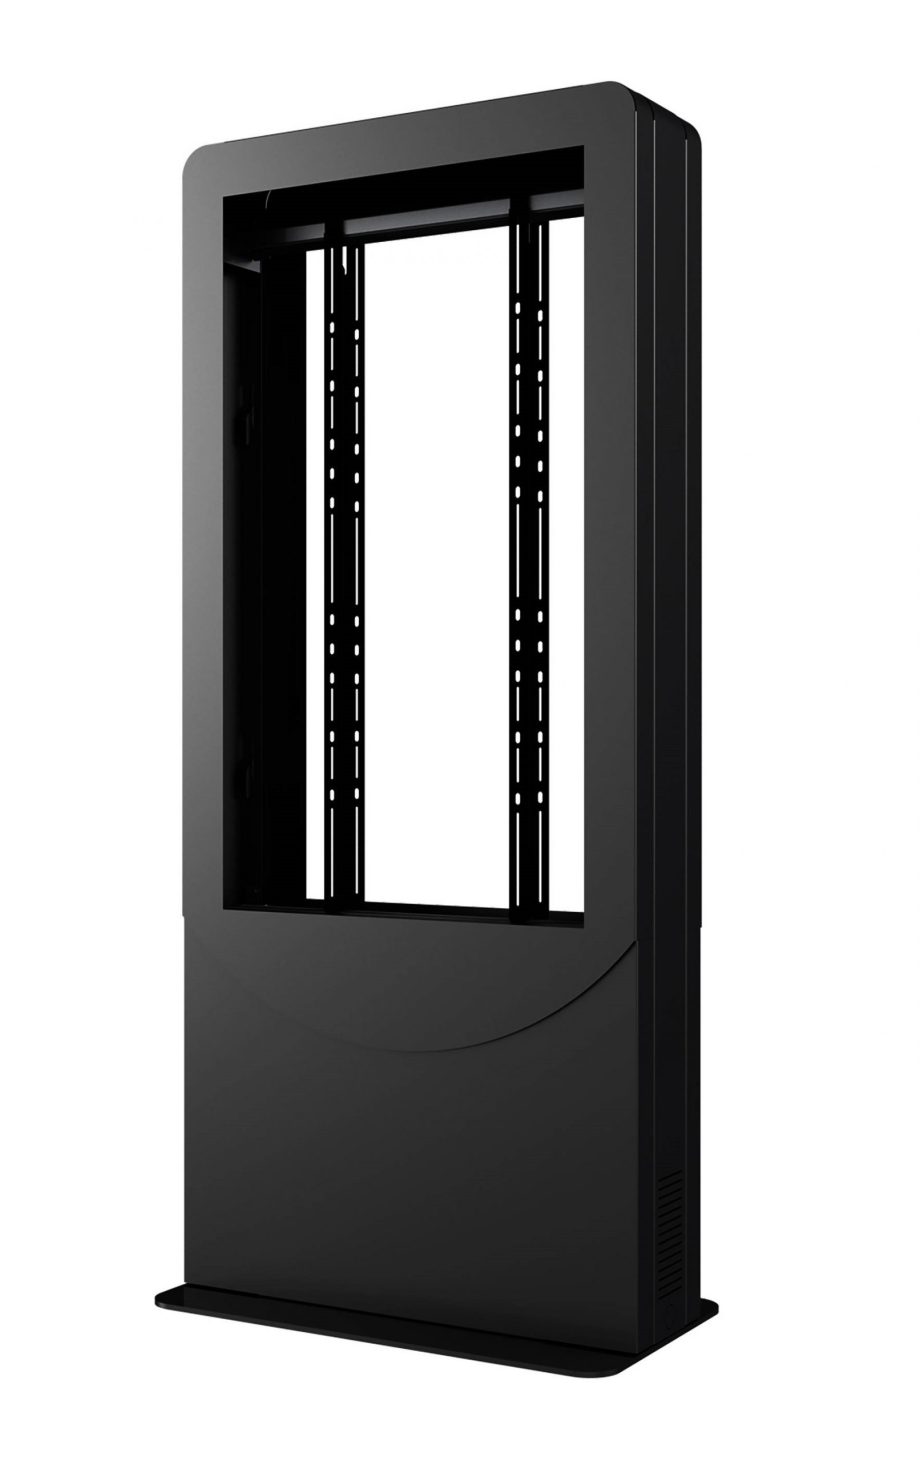 Peerless-AV KIPC2543B-3-EUK Floorstanding Portrait Back-to-Back Kiosk for 43″ Displays up to 3″ Deep, Black, EUK